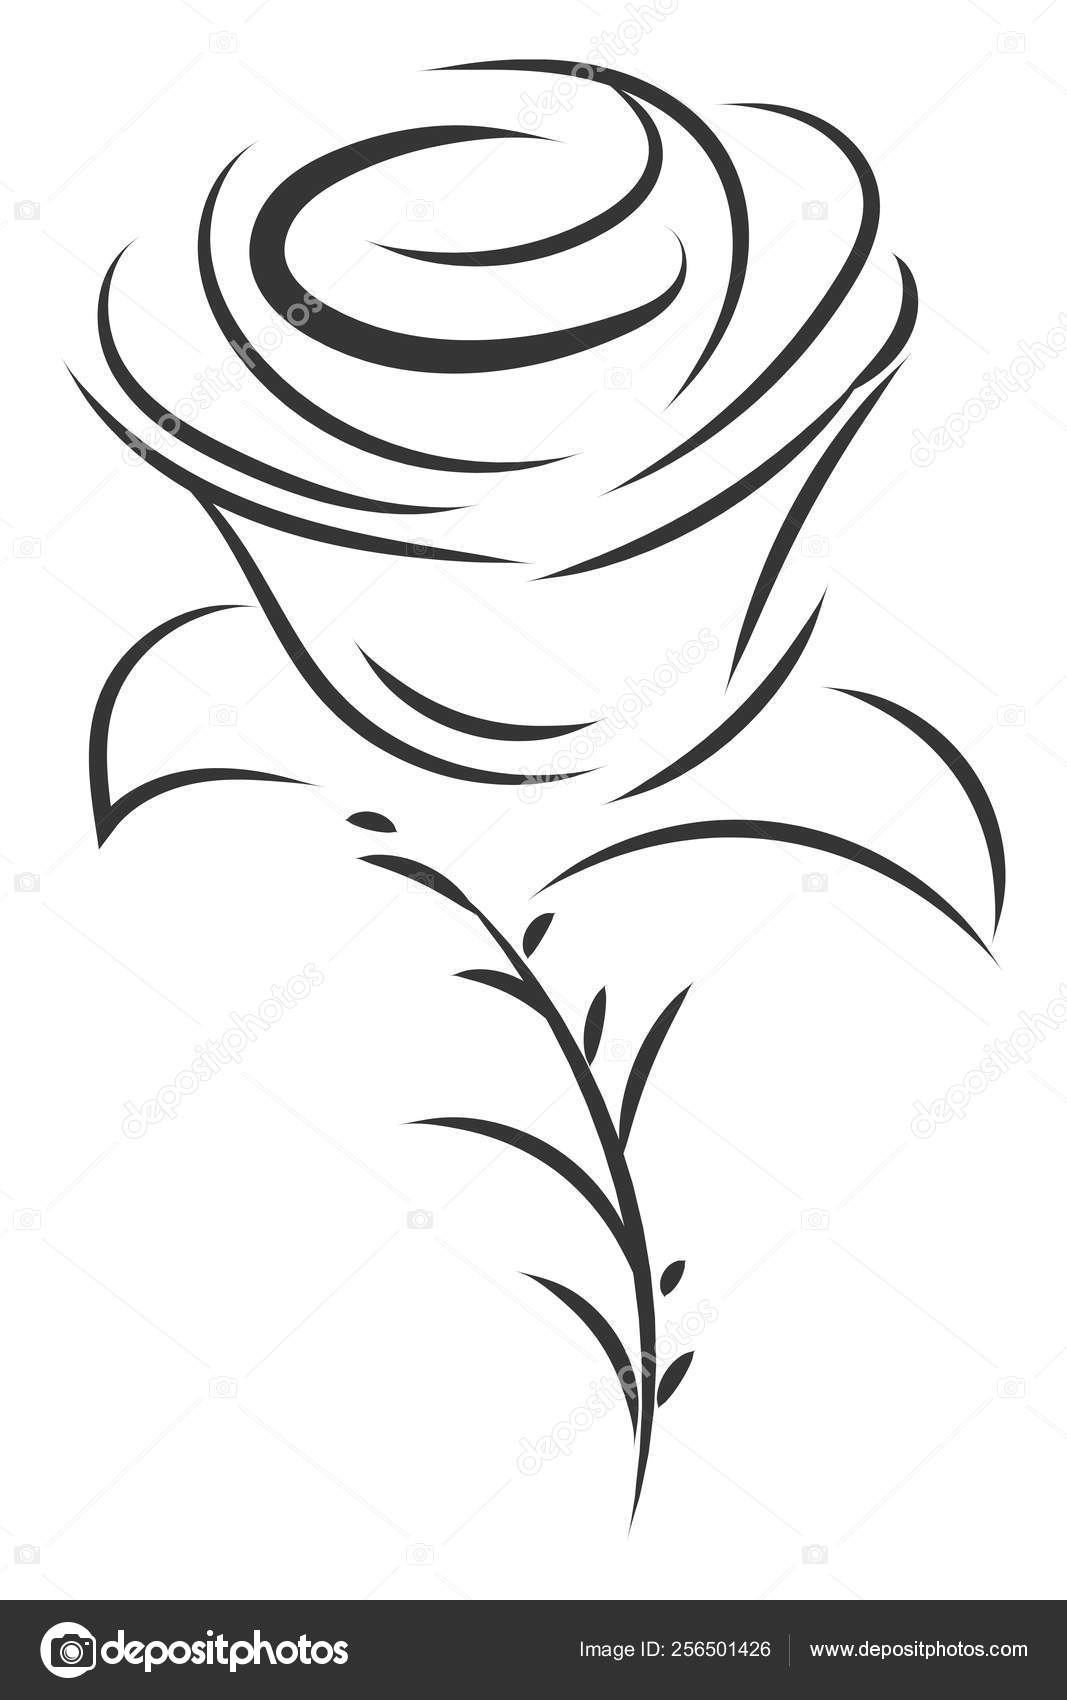 Simple Black White Sketch Rose Flower Vector Illustration White Background Stock Vector C Morphart 256501426